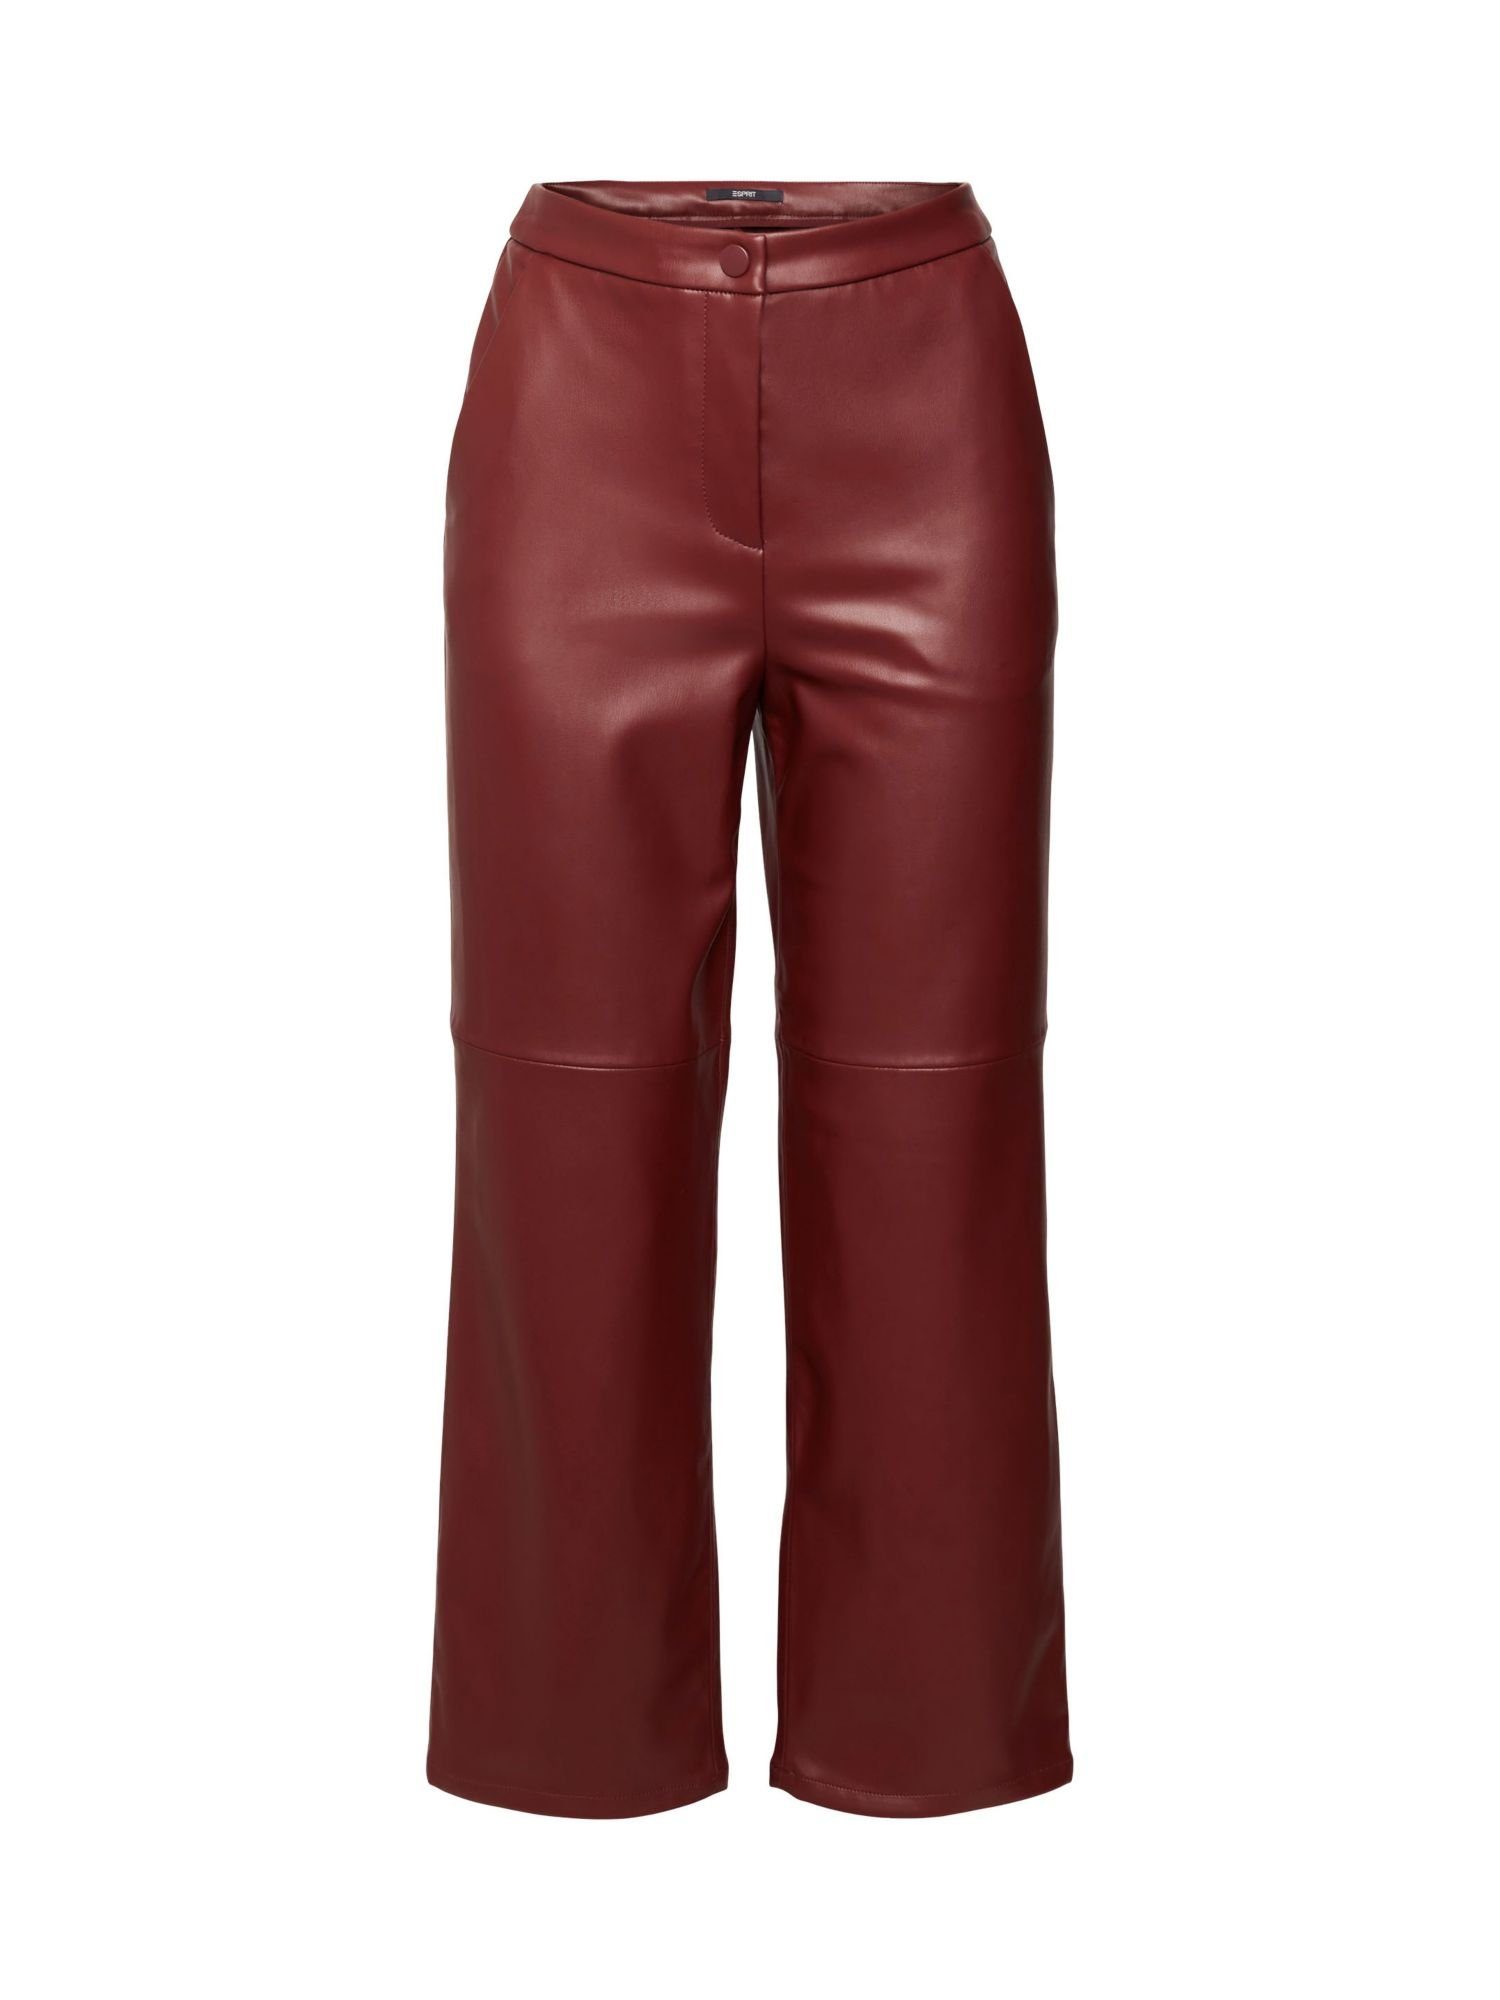 Esprit Collection 7/8-Hose Cropped-Hose in Lederoptik BORDEAUX RED